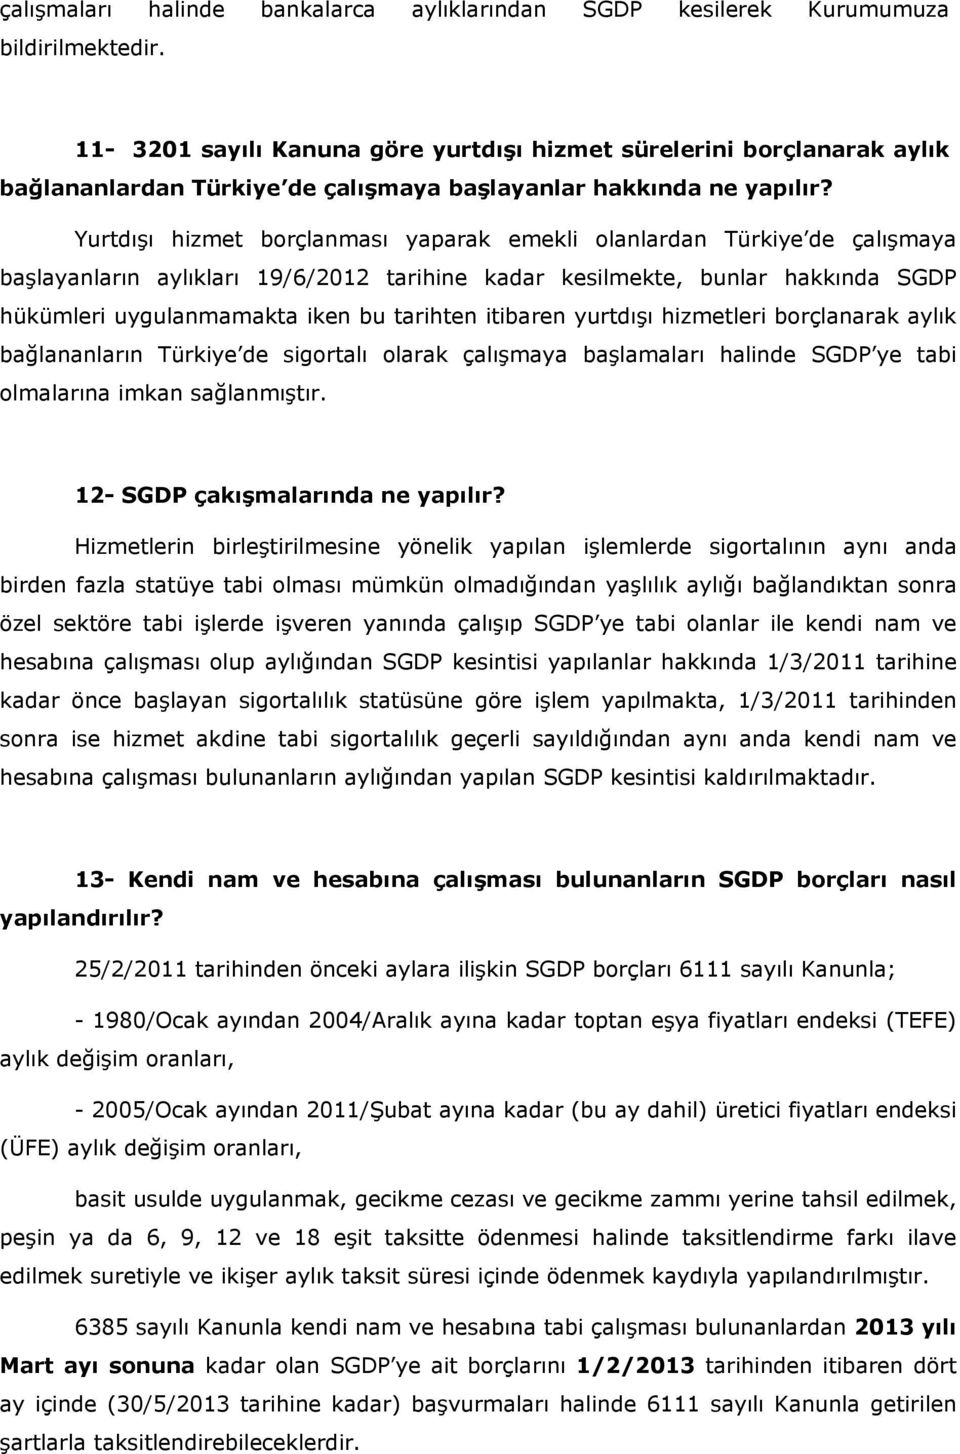 Yurtdışı hizmet borçlanması yaparak emekli olanlardan Türkiye de çalışmaya başlayanların aylıkları 19/6/2012 tarihine kadar kesilmekte, bunlar hakkında SGDP hükümleri uygulanmamakta iken bu tarihten